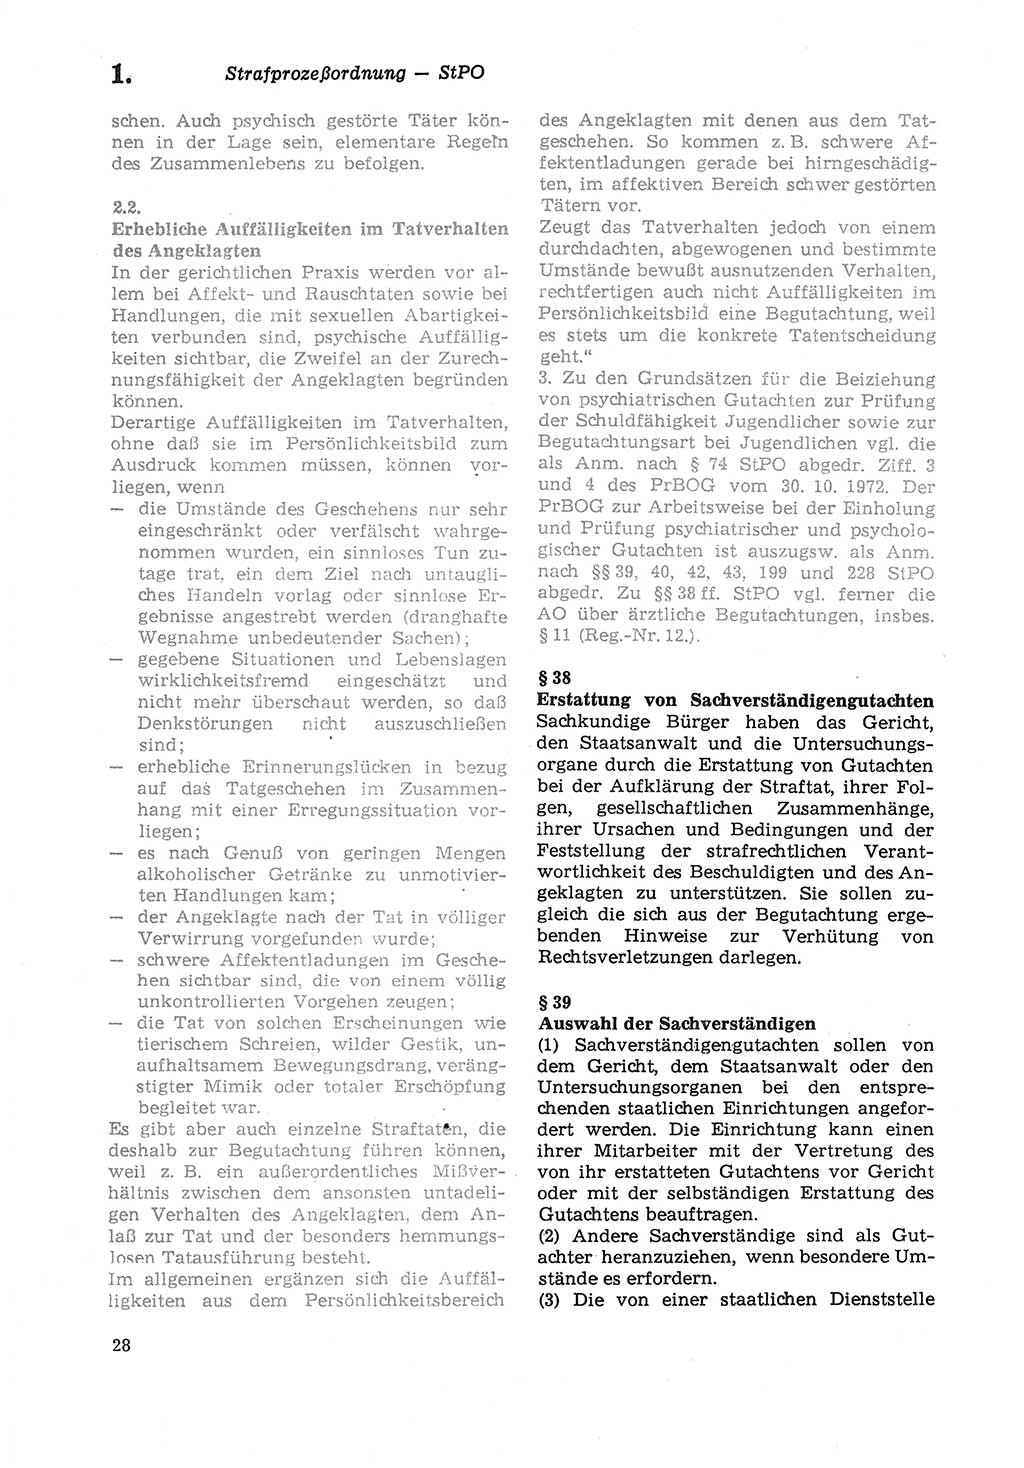 Strafprozeßordnung (StPO) der Deutschen Demokratischen Republik (DDR) sowie angrenzende Gesetze und Bestimmungen 1979, Seite 28 (StPO DDR Ges. Best. 1979, S. 28)